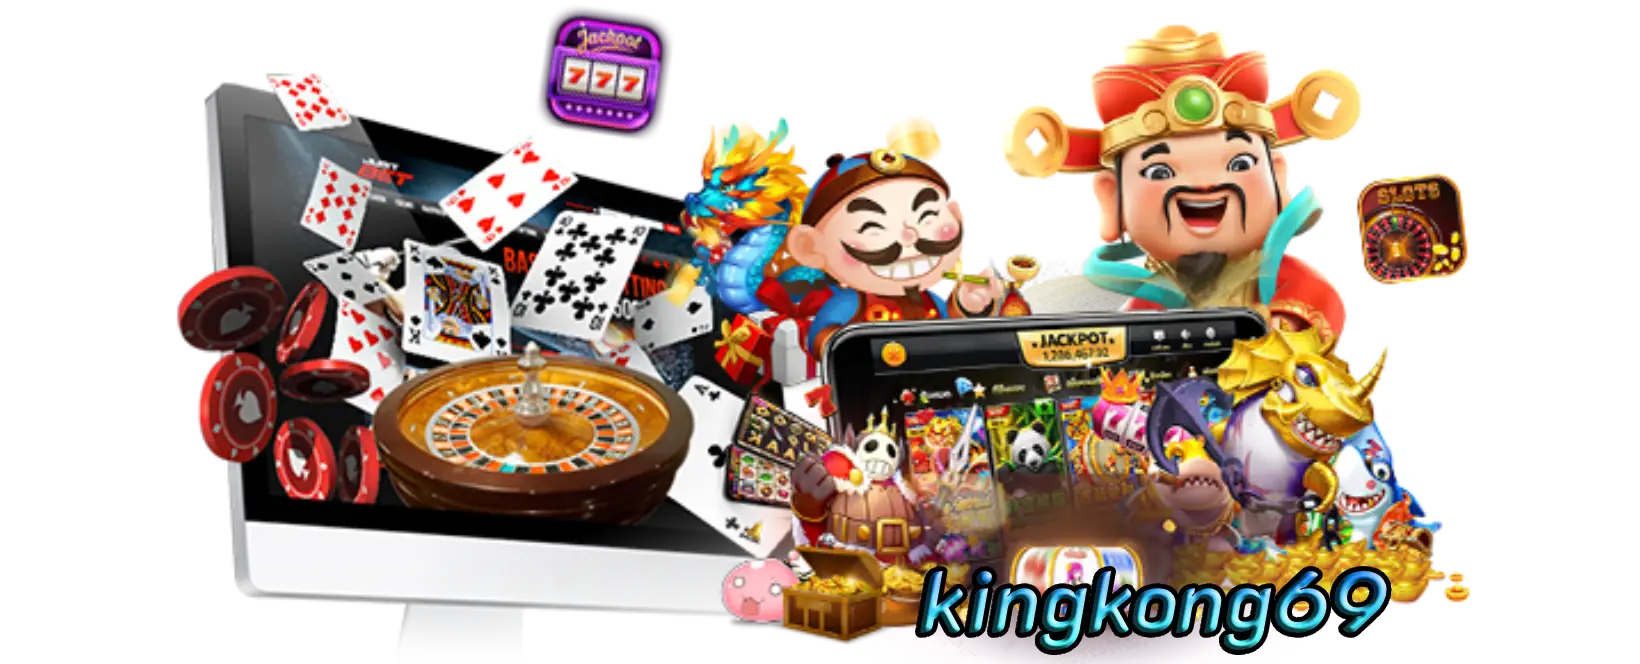 kingkong69 คาสิโนให้เลือกเล่นมากมายพร้อมเกมใหม่